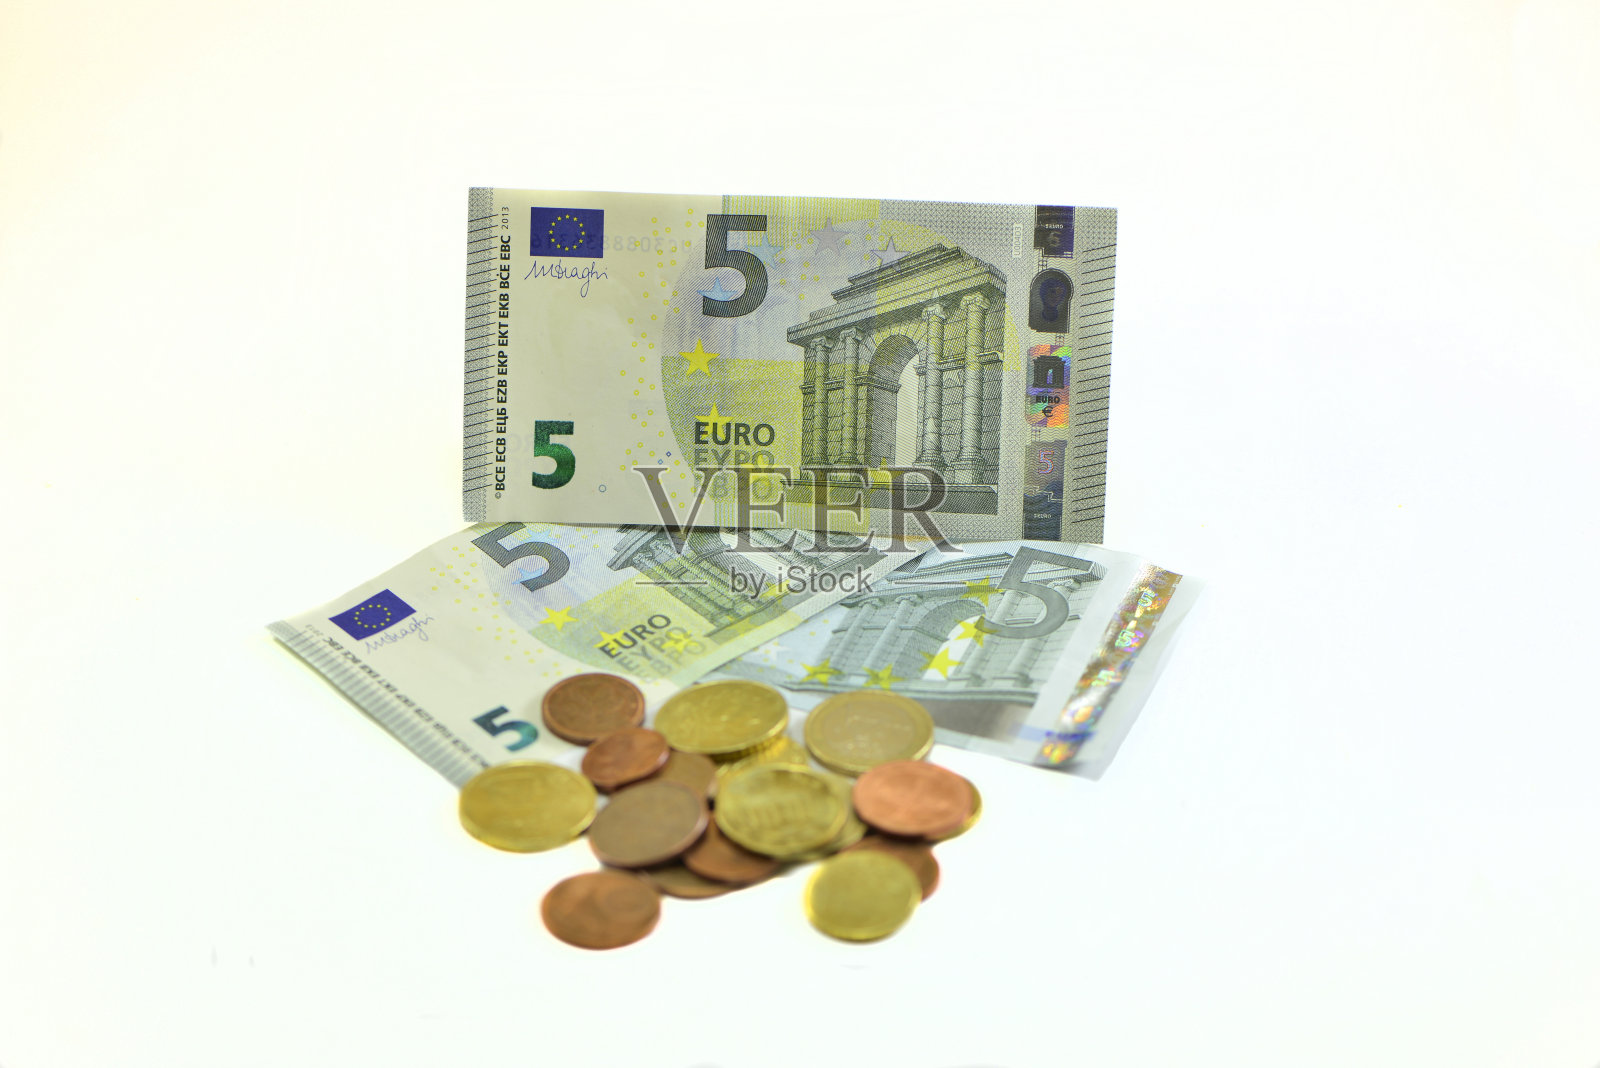 2013年新版五欧元钞票照片摄影图片